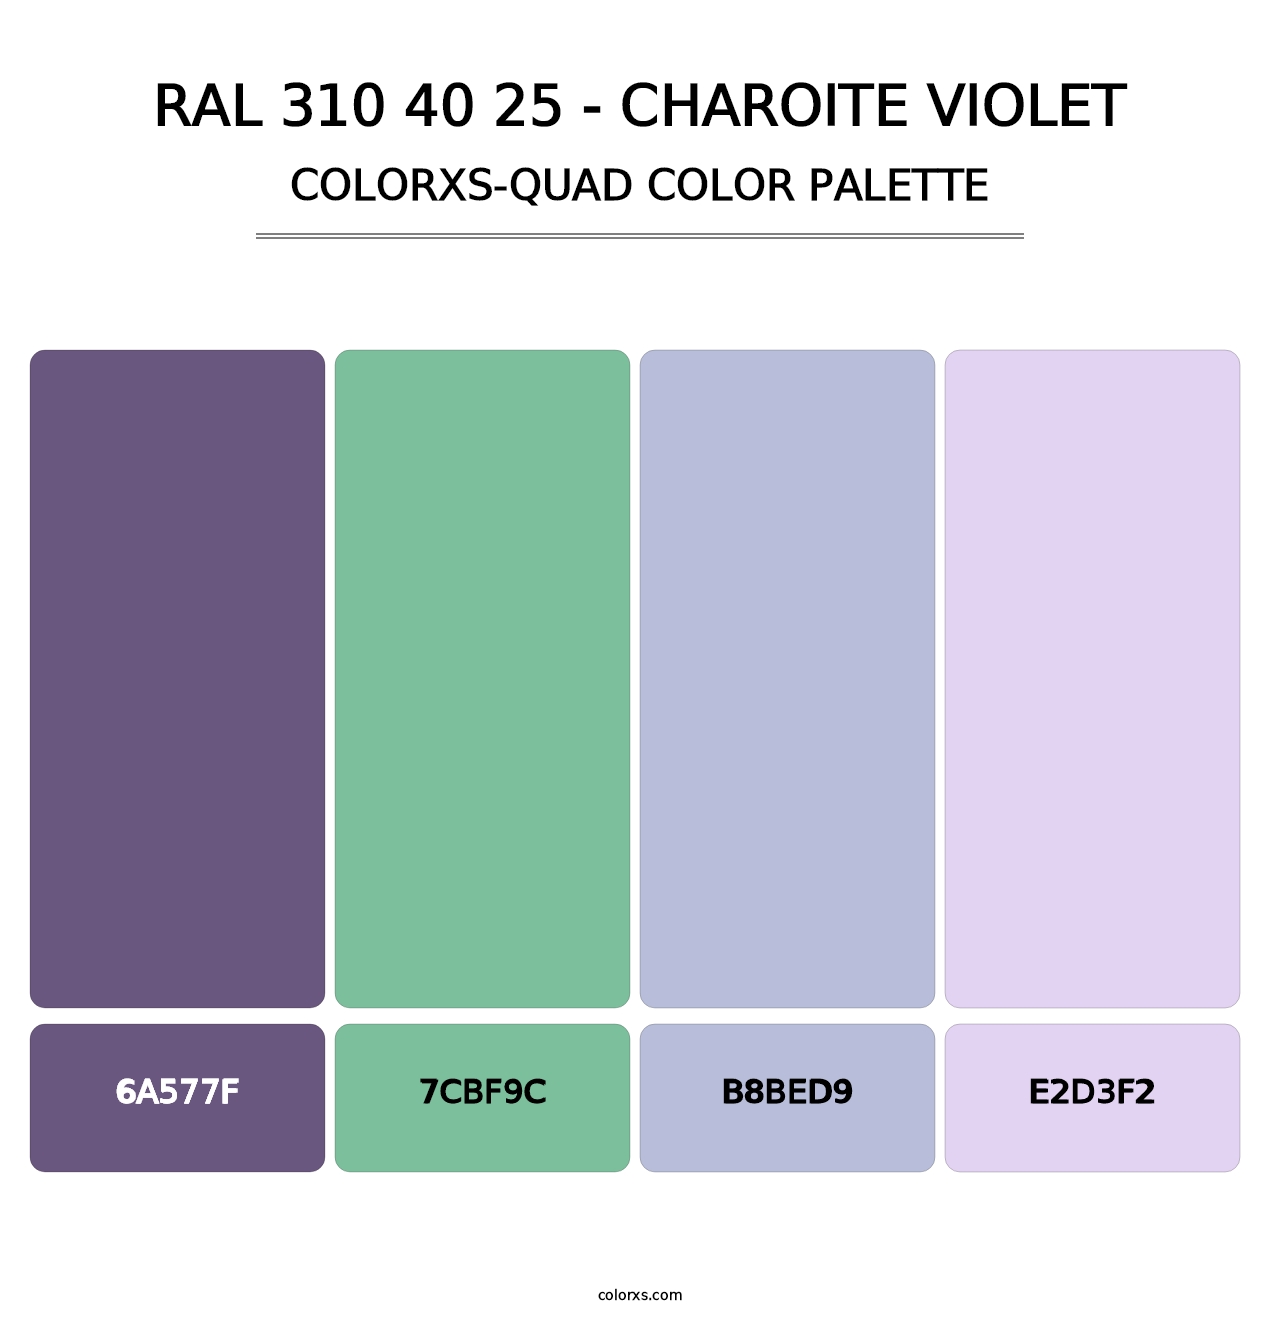 RAL 310 40 25 - Charoite Violet - Colorxs Quad Palette